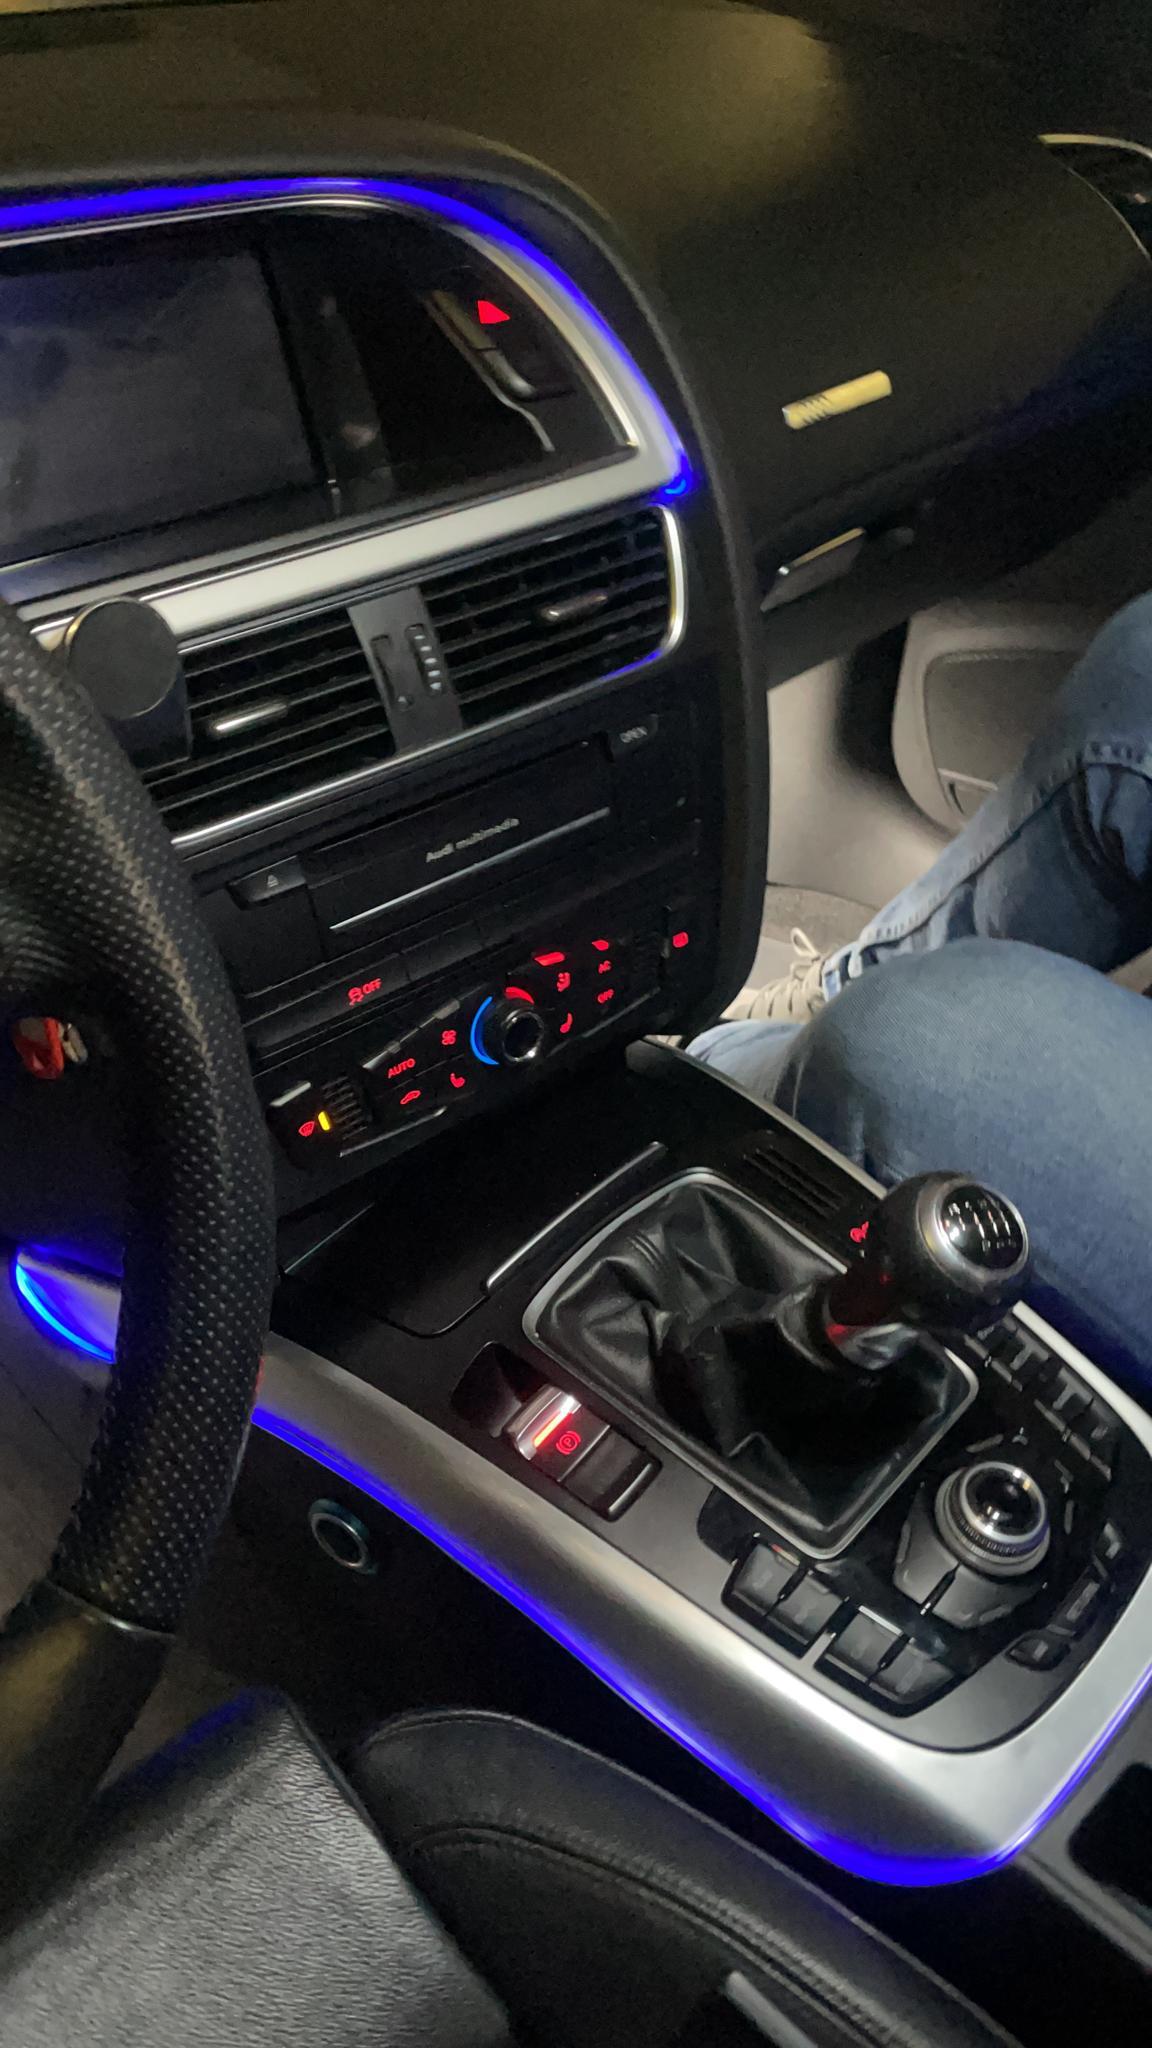 IYC - EL Ambiente Lichtleiste Ambientebeleuchtung für Audi A5 8T Sportback  - Türen